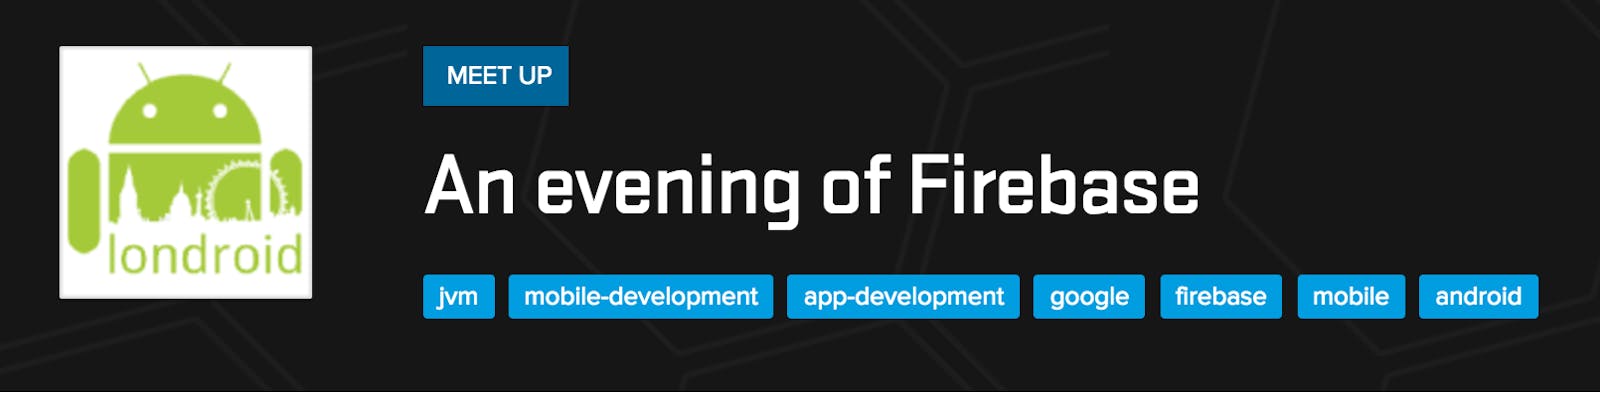 An evening of Firebase - event review